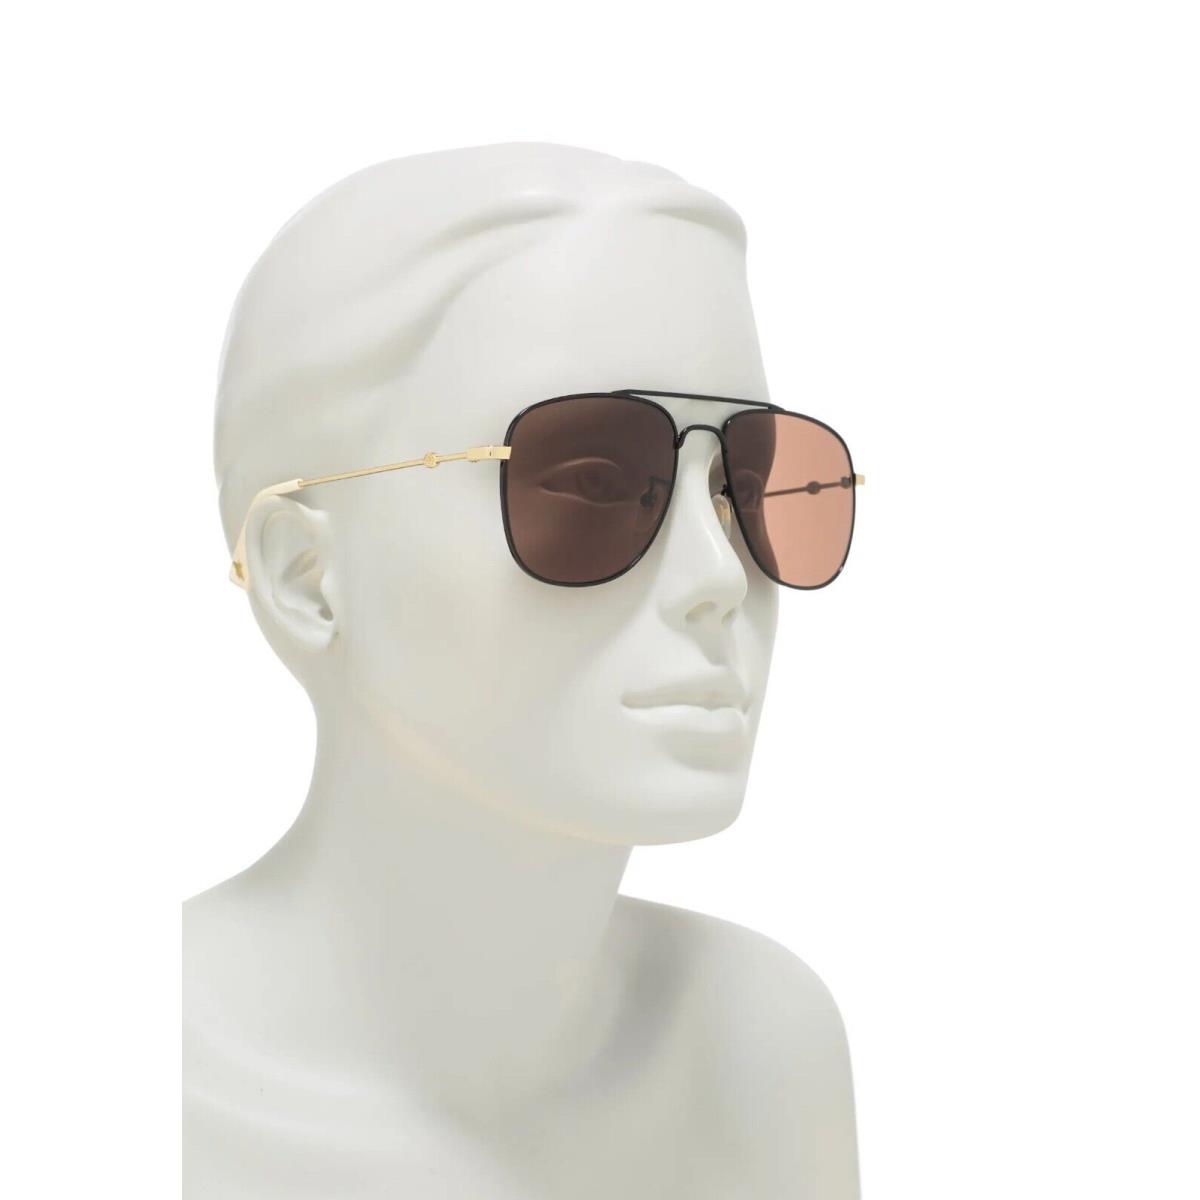 Gucci sunglasses  - Black Frame, Brown Lens, Black/Gold Brown Manufacturer